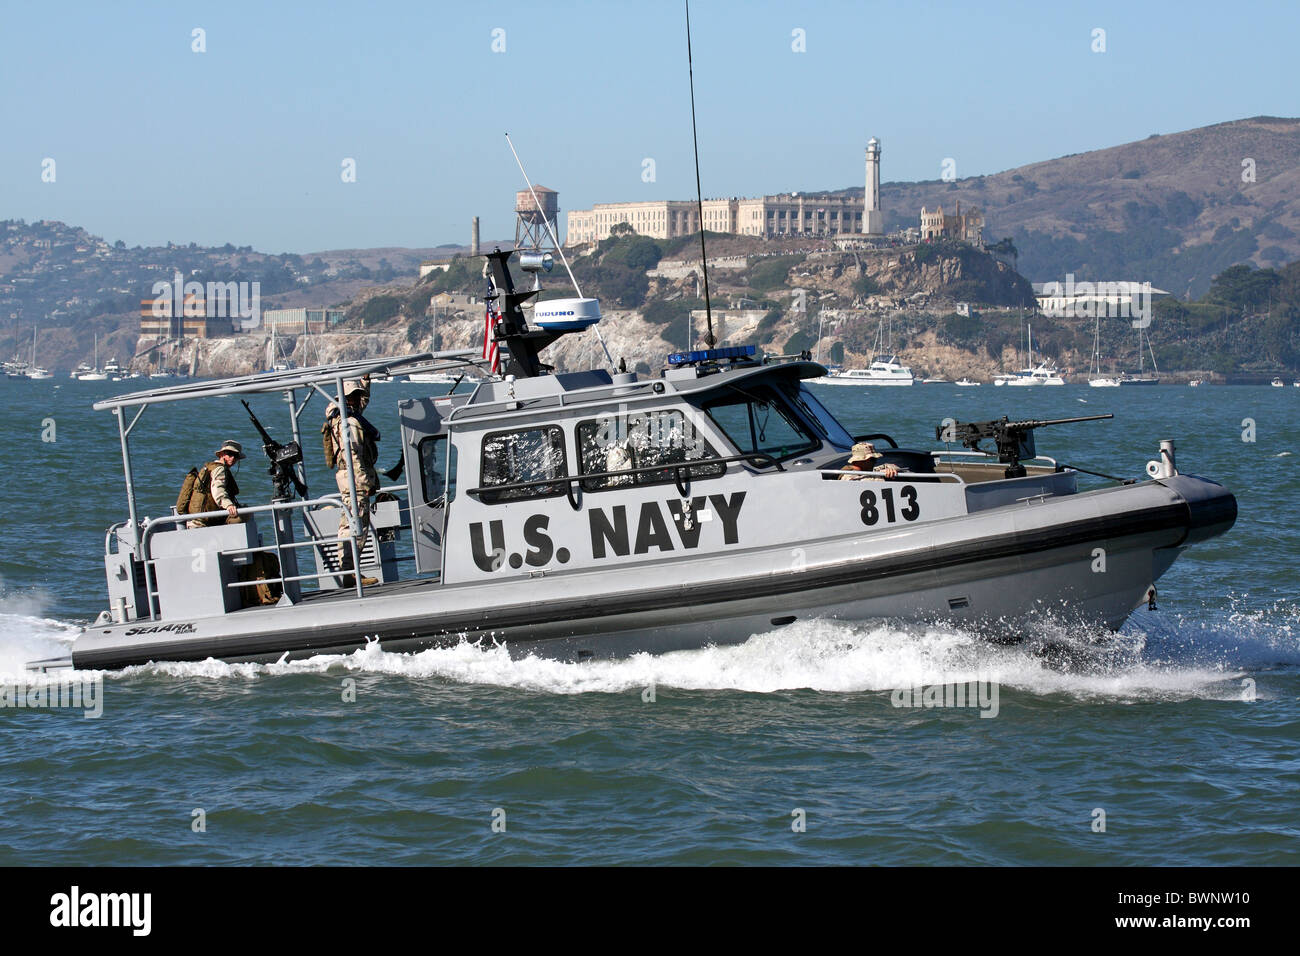 La Marine américaine patrouille des forces de sécurité le front de mer de San Francisco dans l'arche de la mer pied 34 bateau de sécurité de la Marine. Banque D'Images